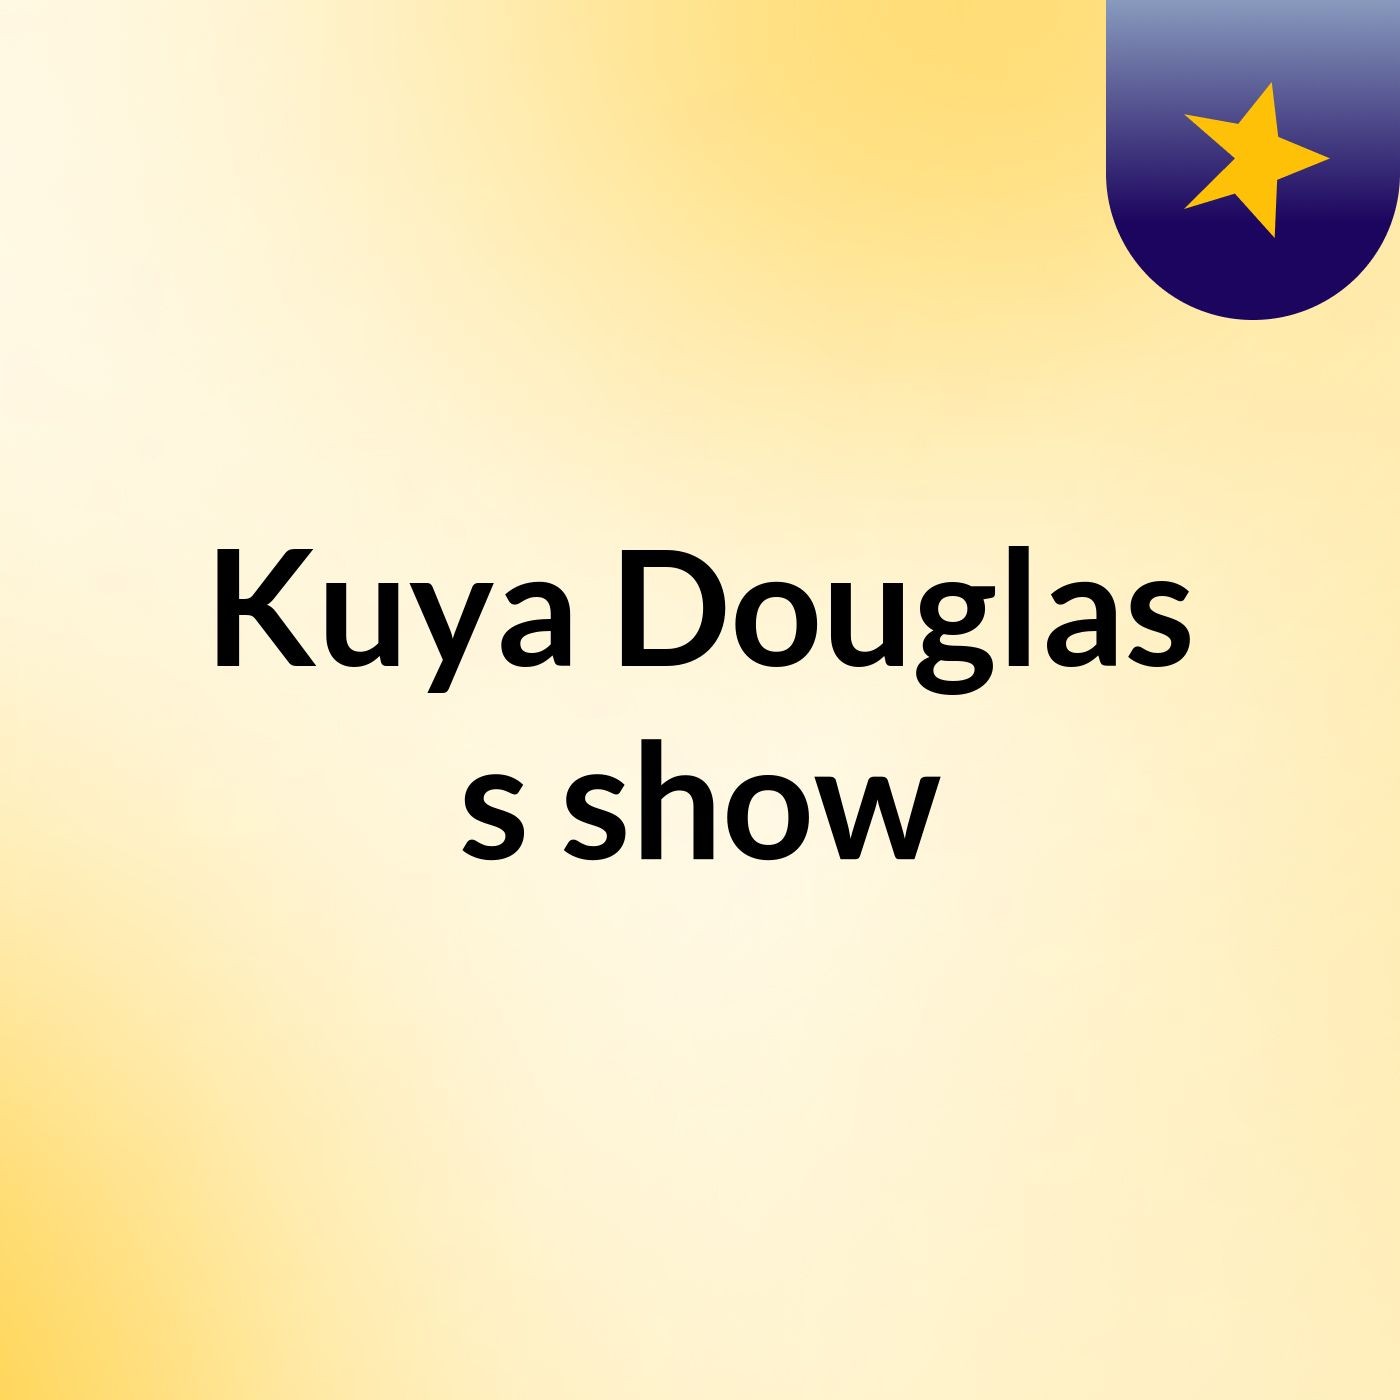 Kuya Douglas's show